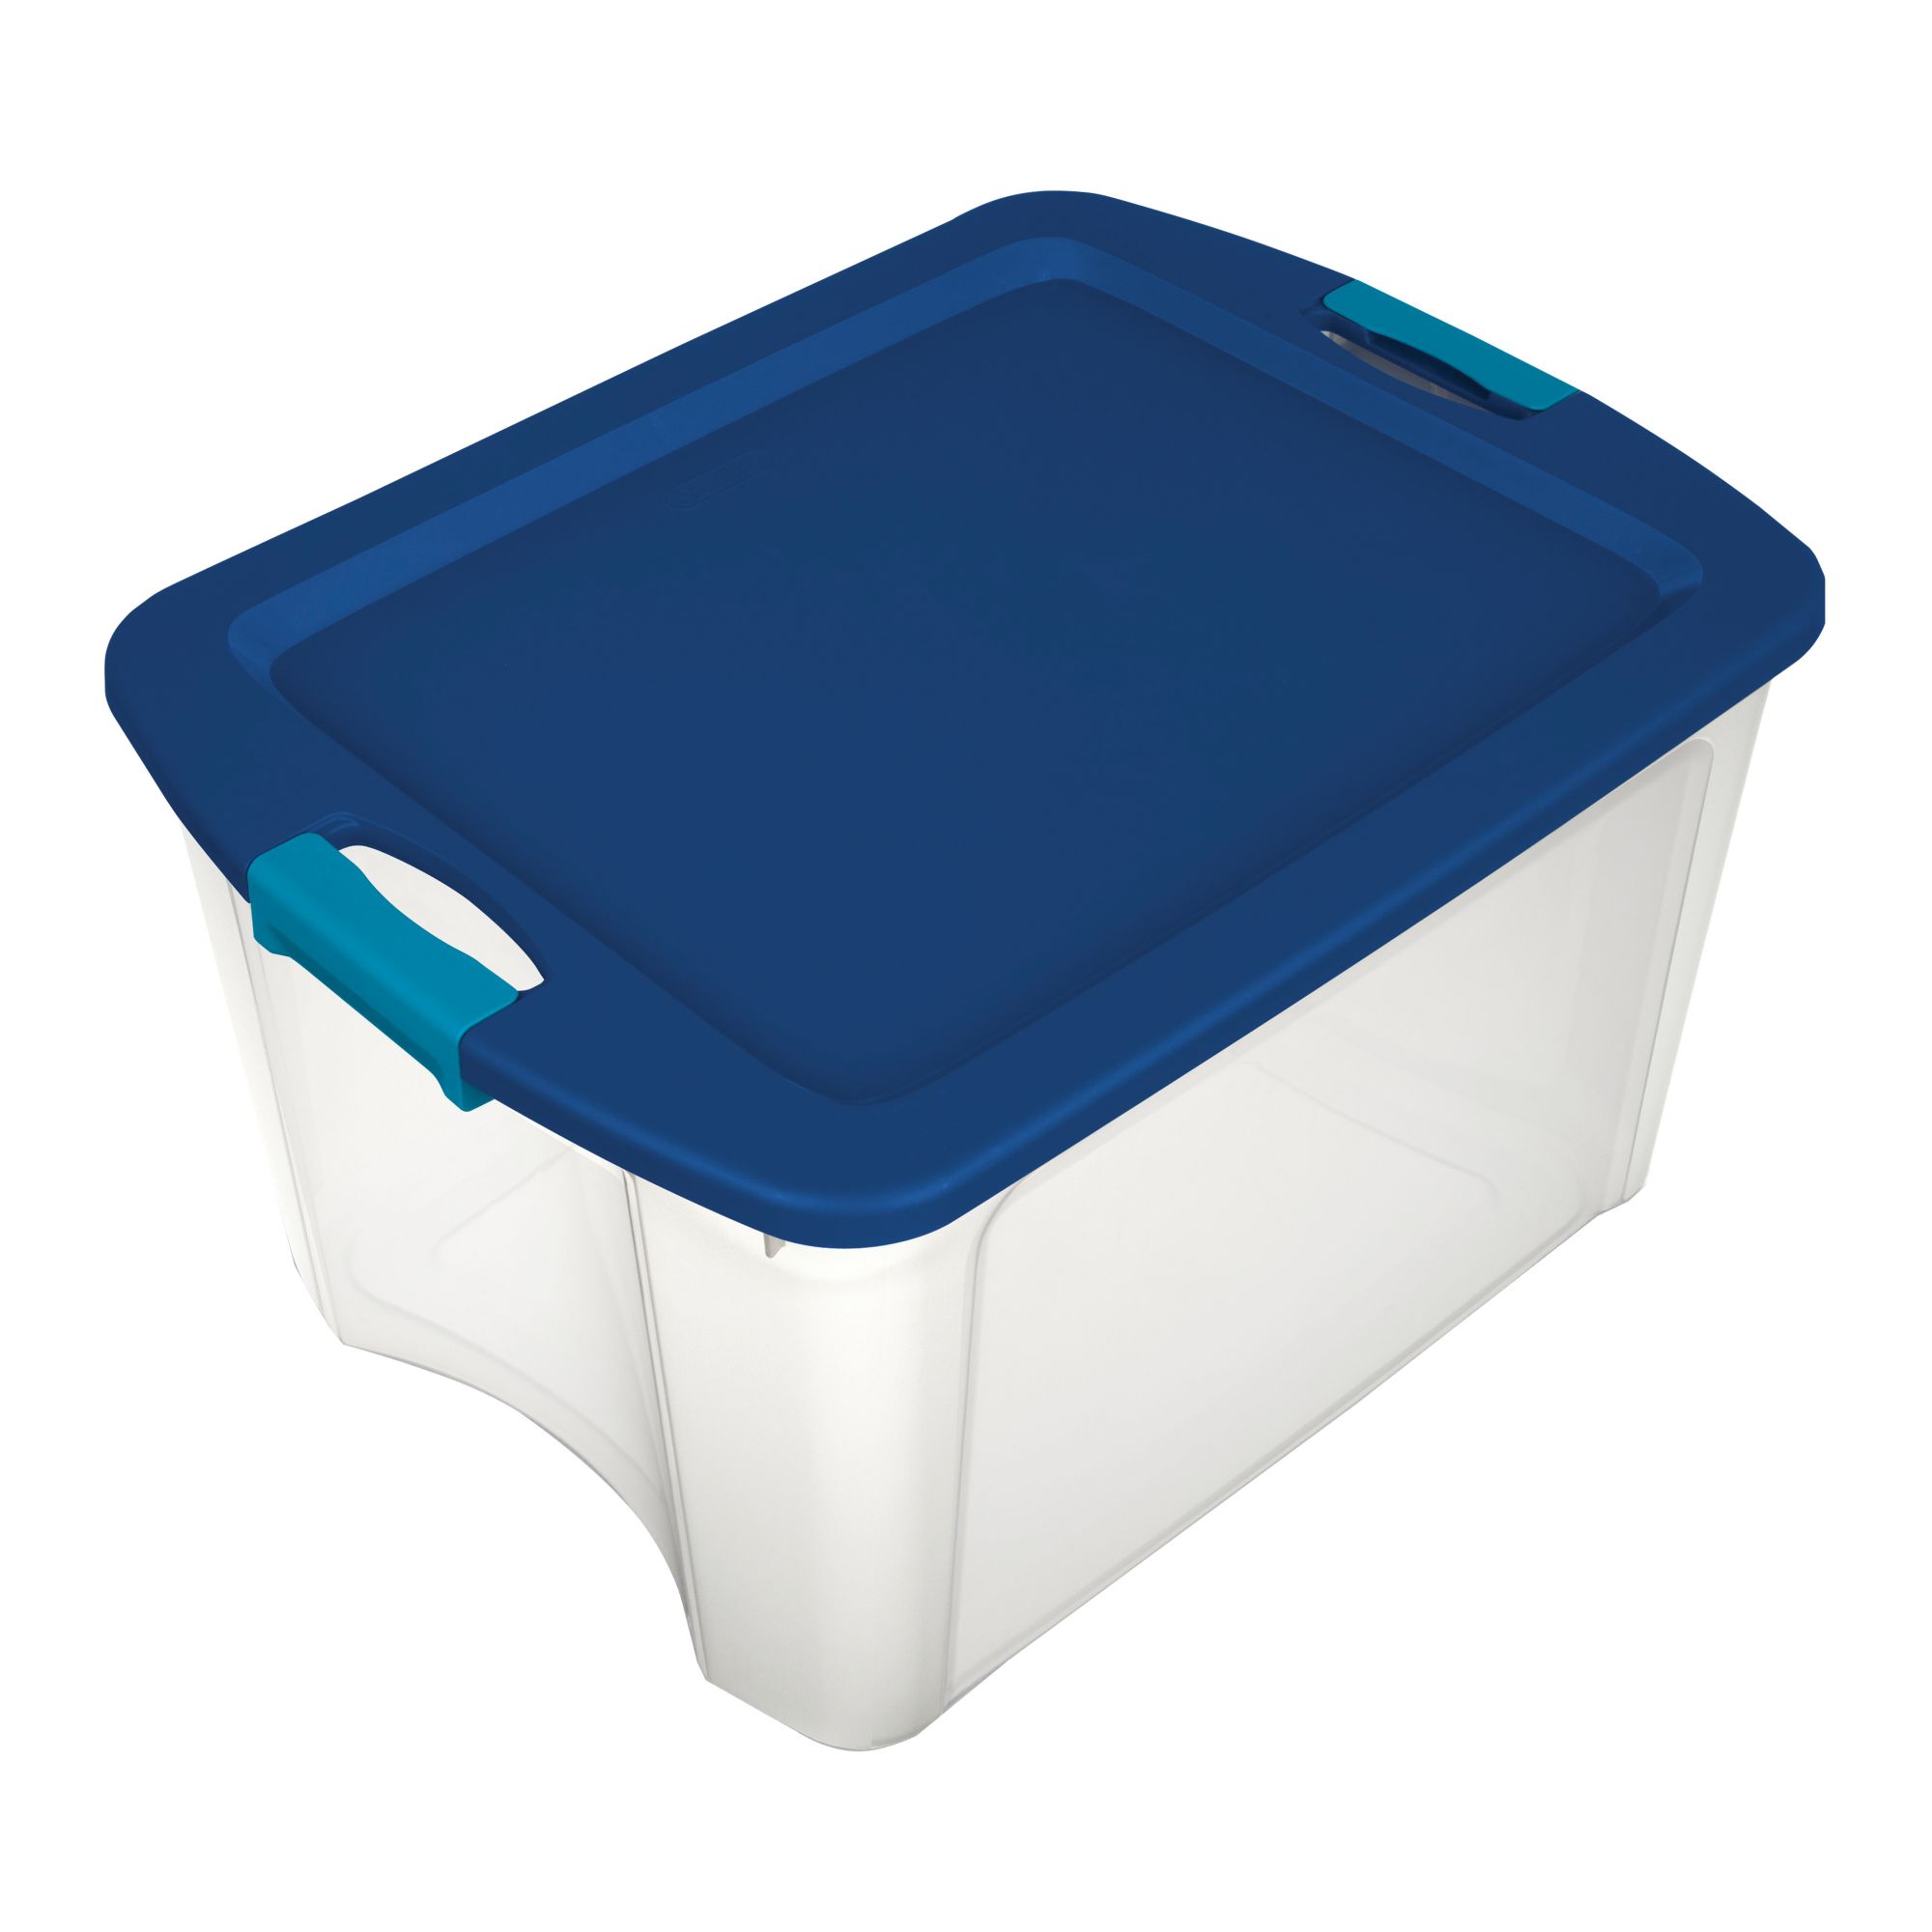 4 storage bins tubs STERILITE /RUBBERMAID - household items - by owner -  housewares sale - craigslist